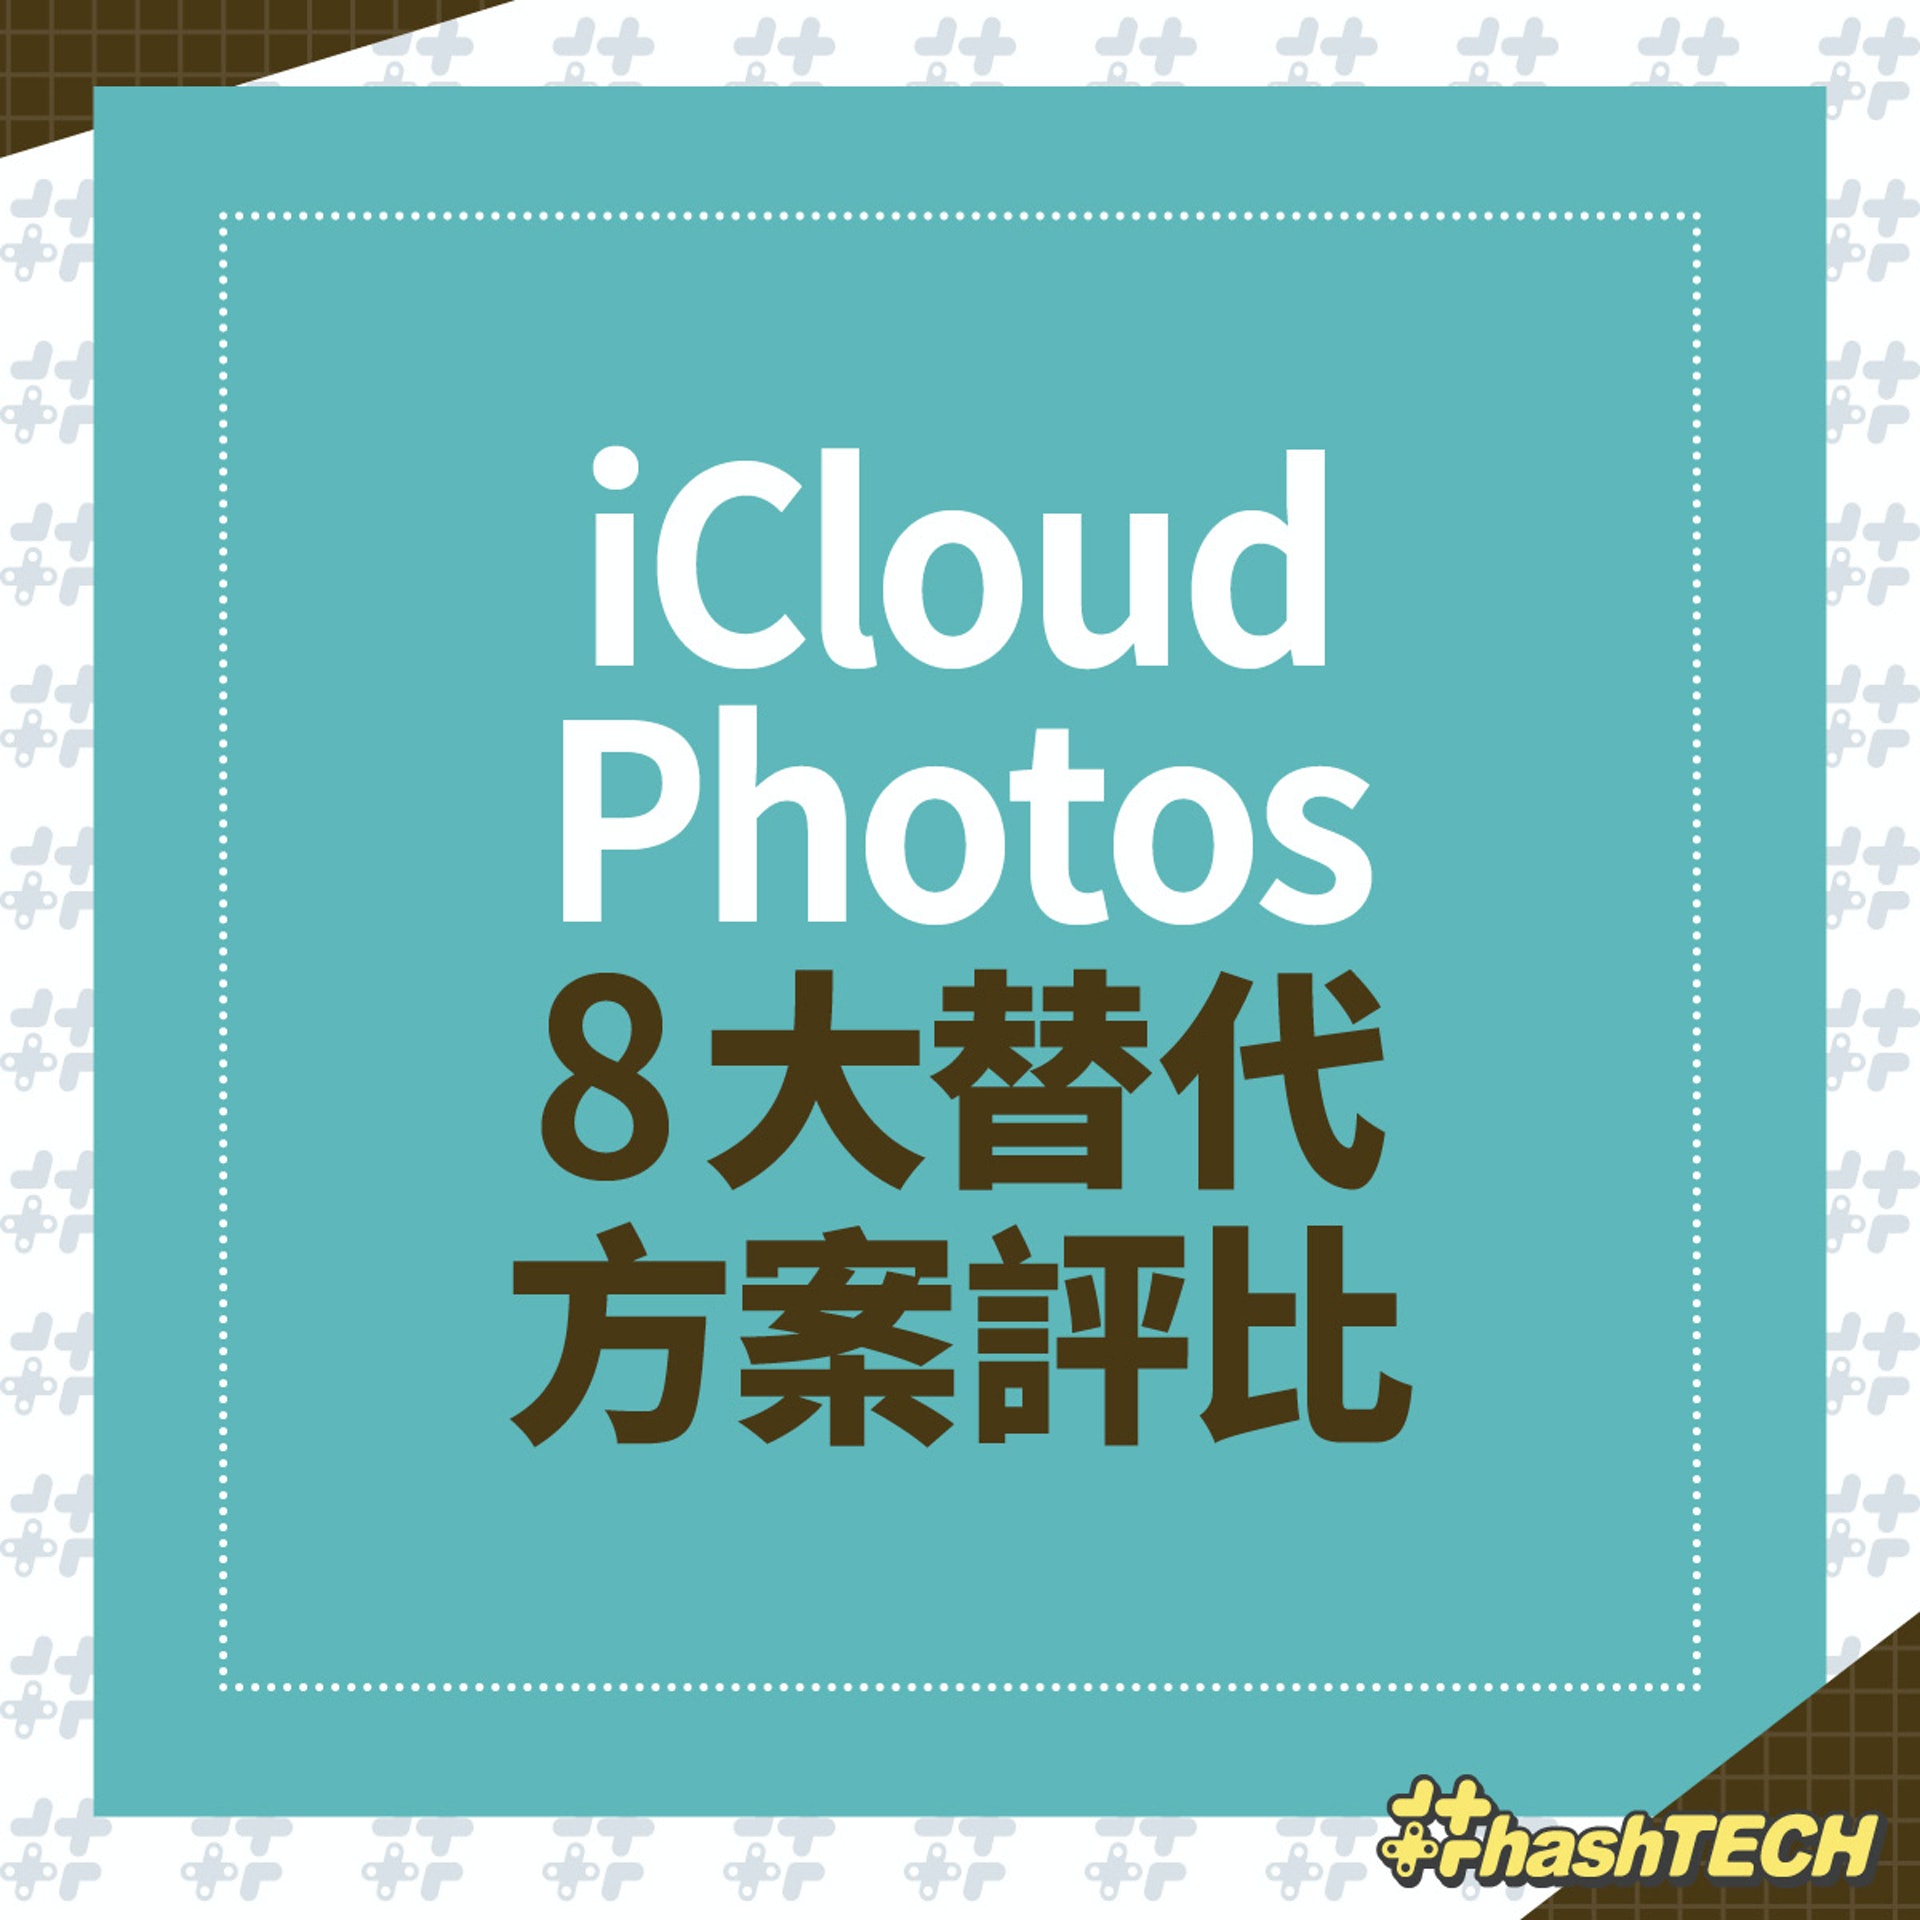 8 款 iCloud 以外的雲端相簿